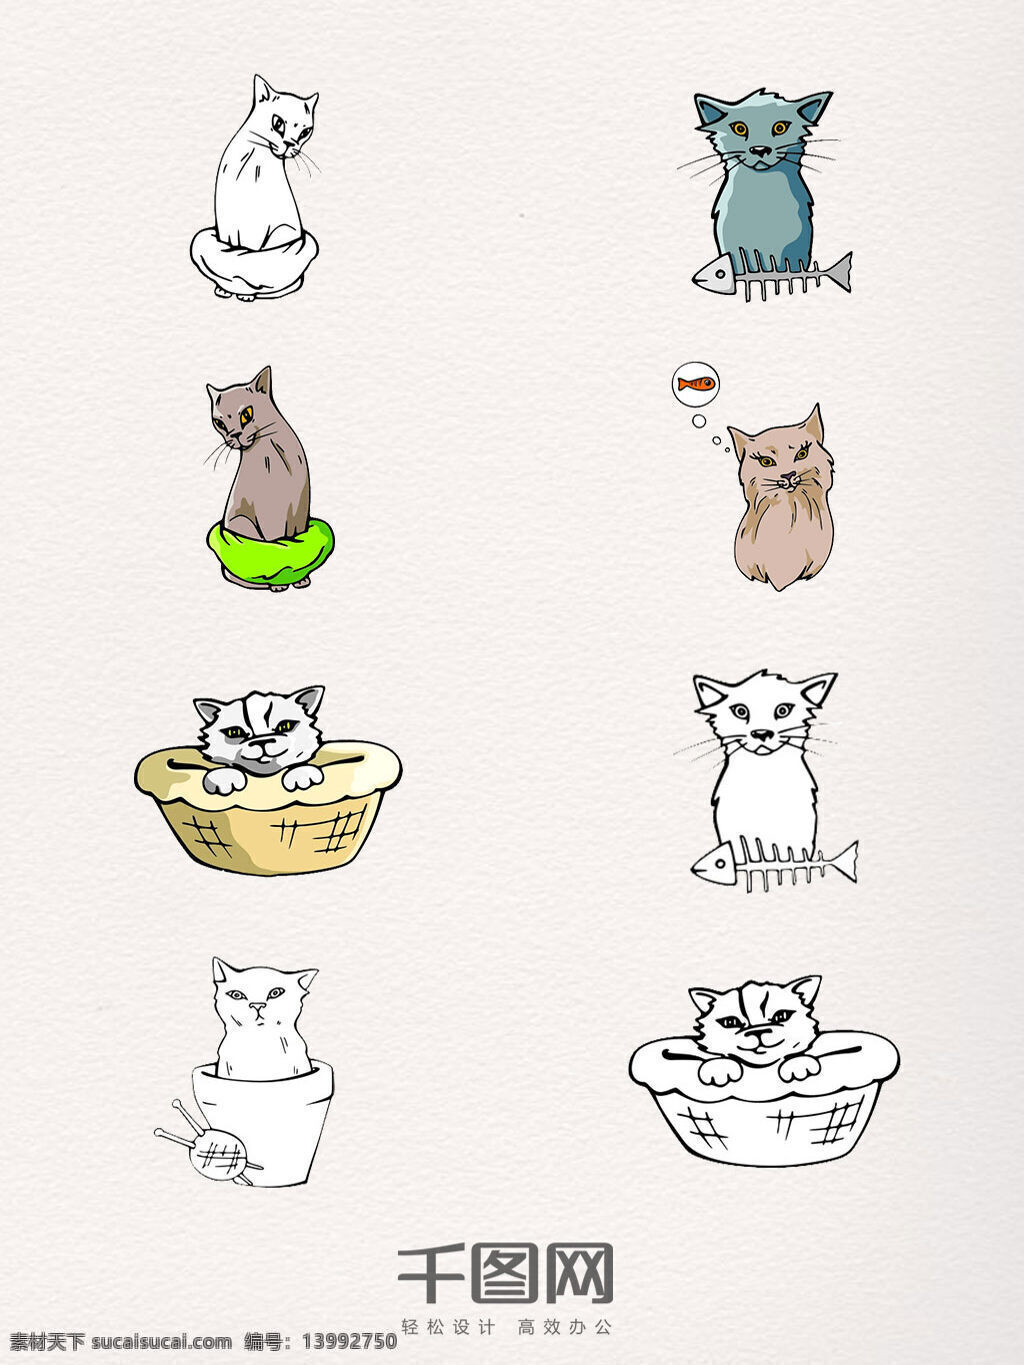 卡通 手绘 猫 元素 猫元素 png素材 创意 鱼骨头 卡通猫 插画 简笔画 线条